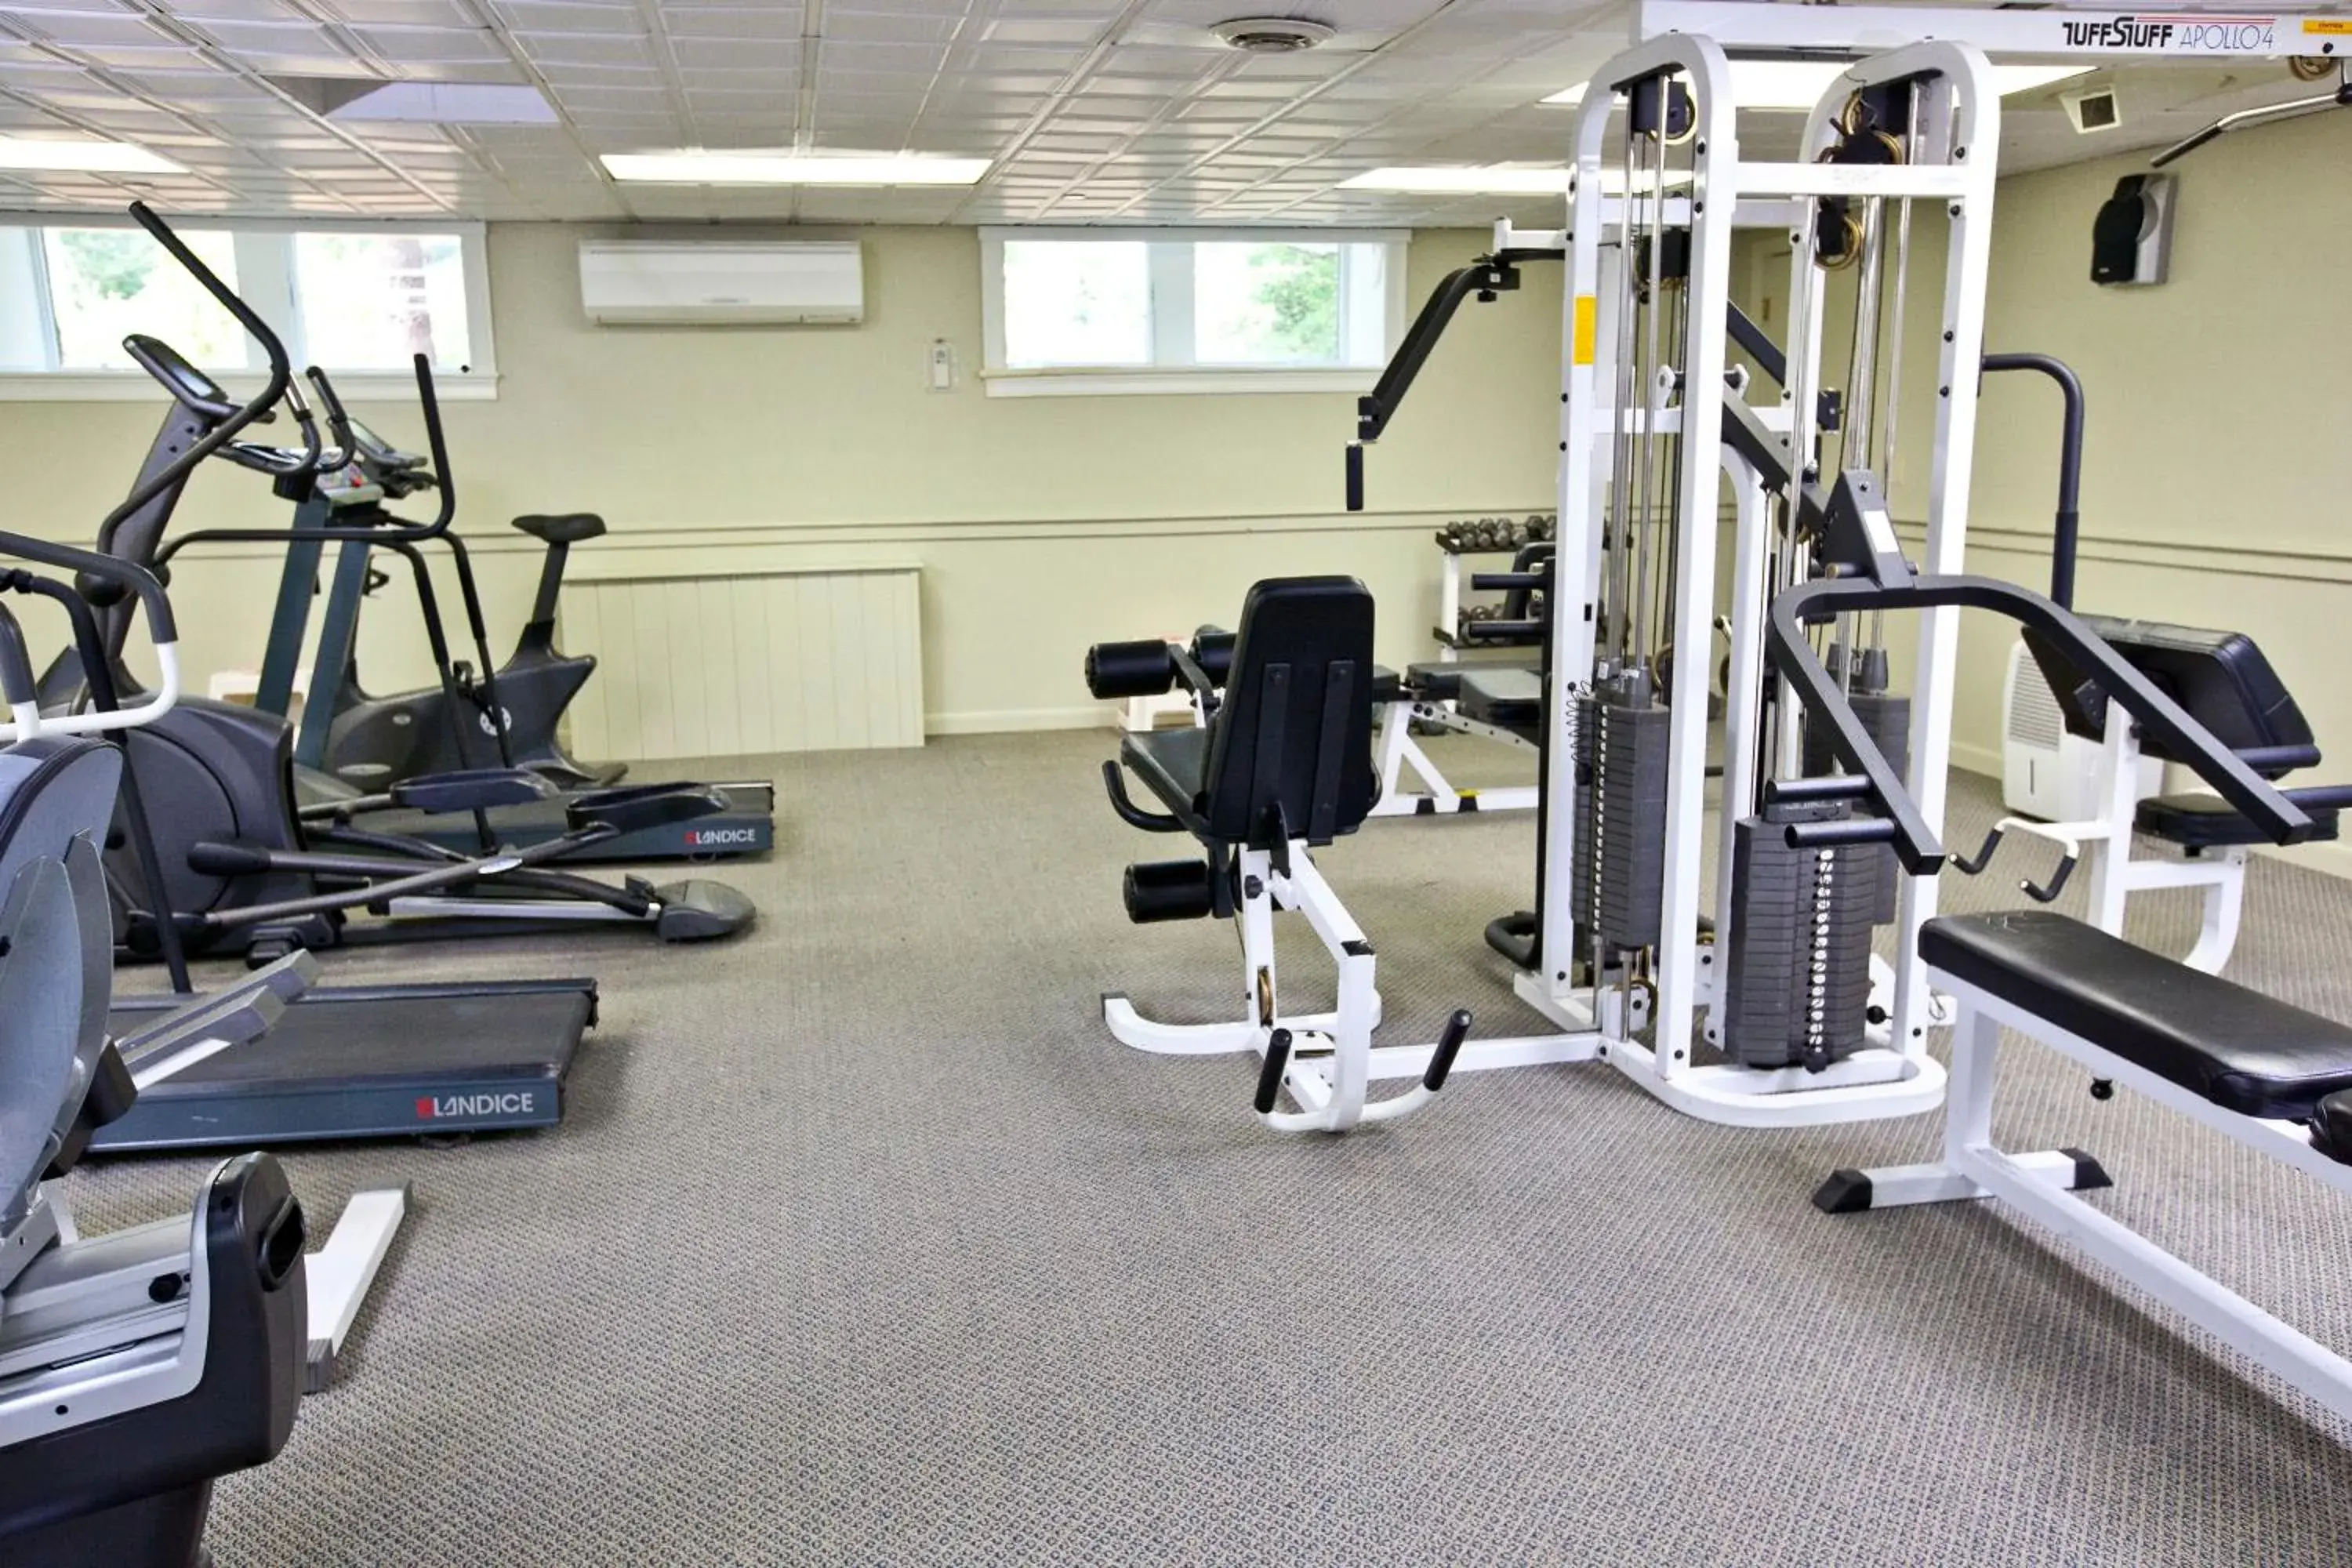 Fitness centre/facilities, Fitness Center/Facilities in Holly Tree Resort, a VRI resort